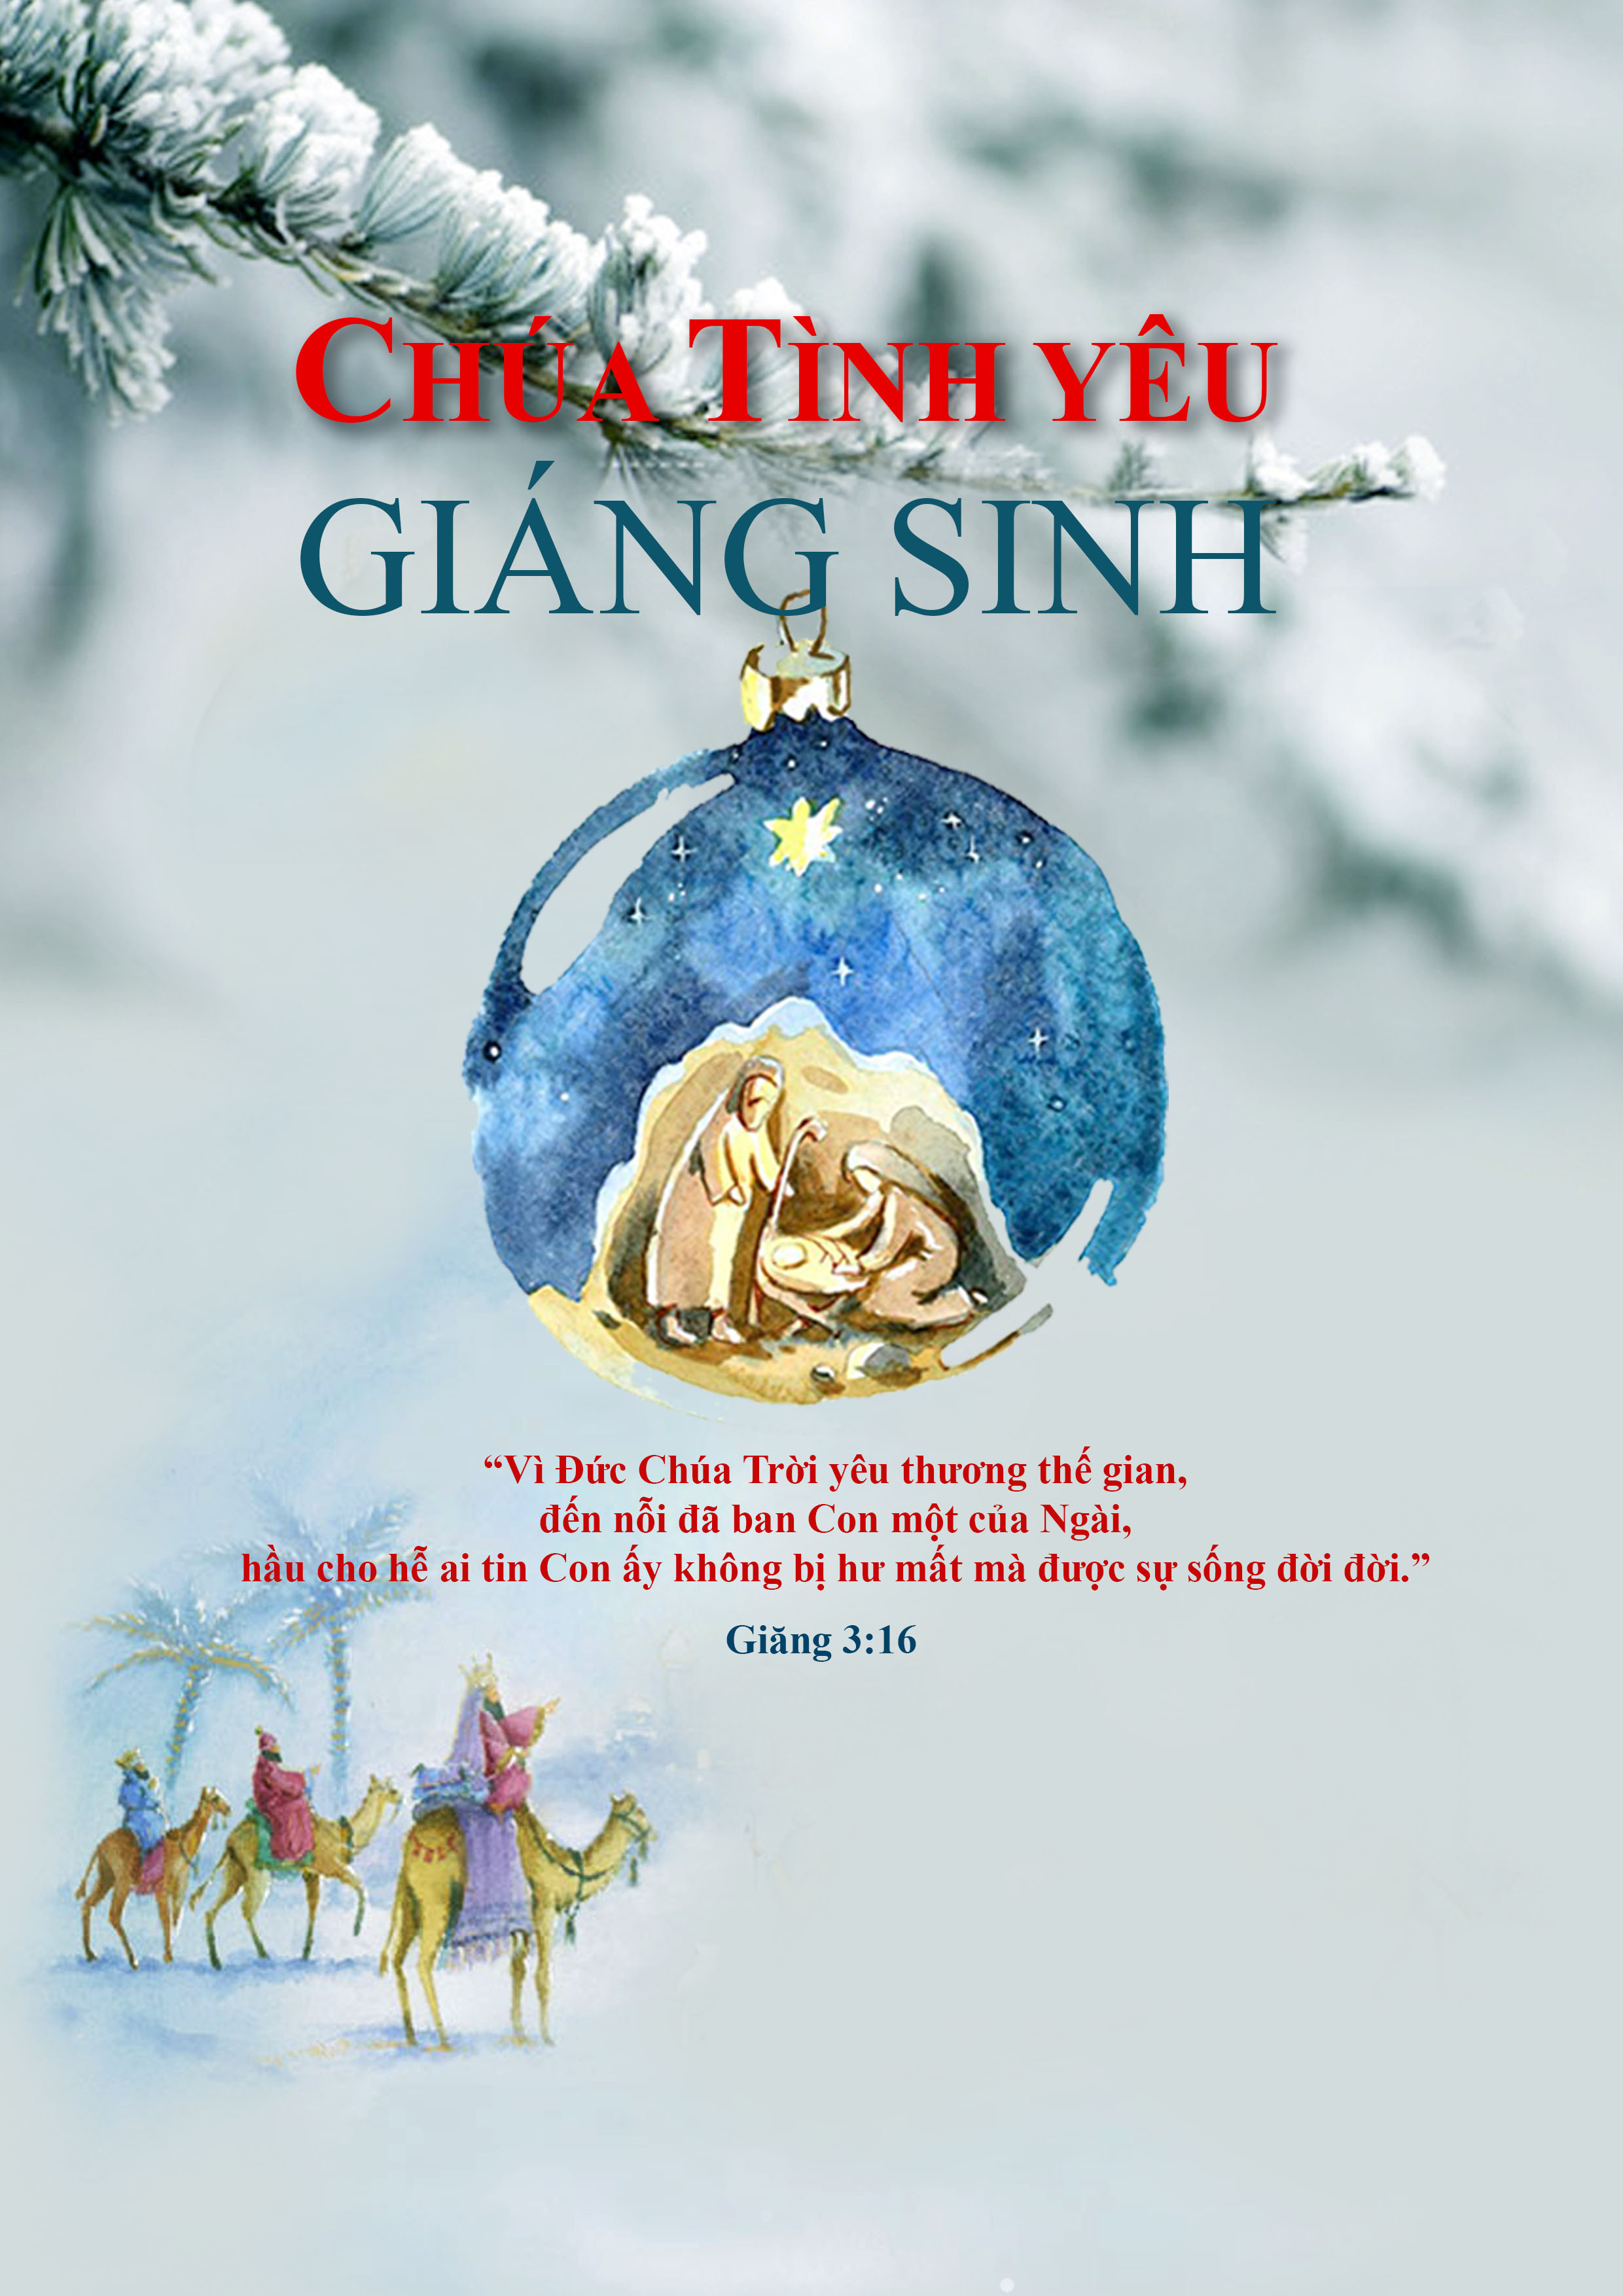 Vào dịp Giáng sinh năm nay, Hội Thánh Tin Lành Việt Nam đã tổ chức rất nhiều hoạt động hấp dẫn và ý nghĩa cho cộng đồng. Hãy cùng chúng tôi khám phá các hoạt động và ngắm nhìn những hình ảnh đẹp nhất về các bữa tiệc Noel tuyệt vời tại đây.